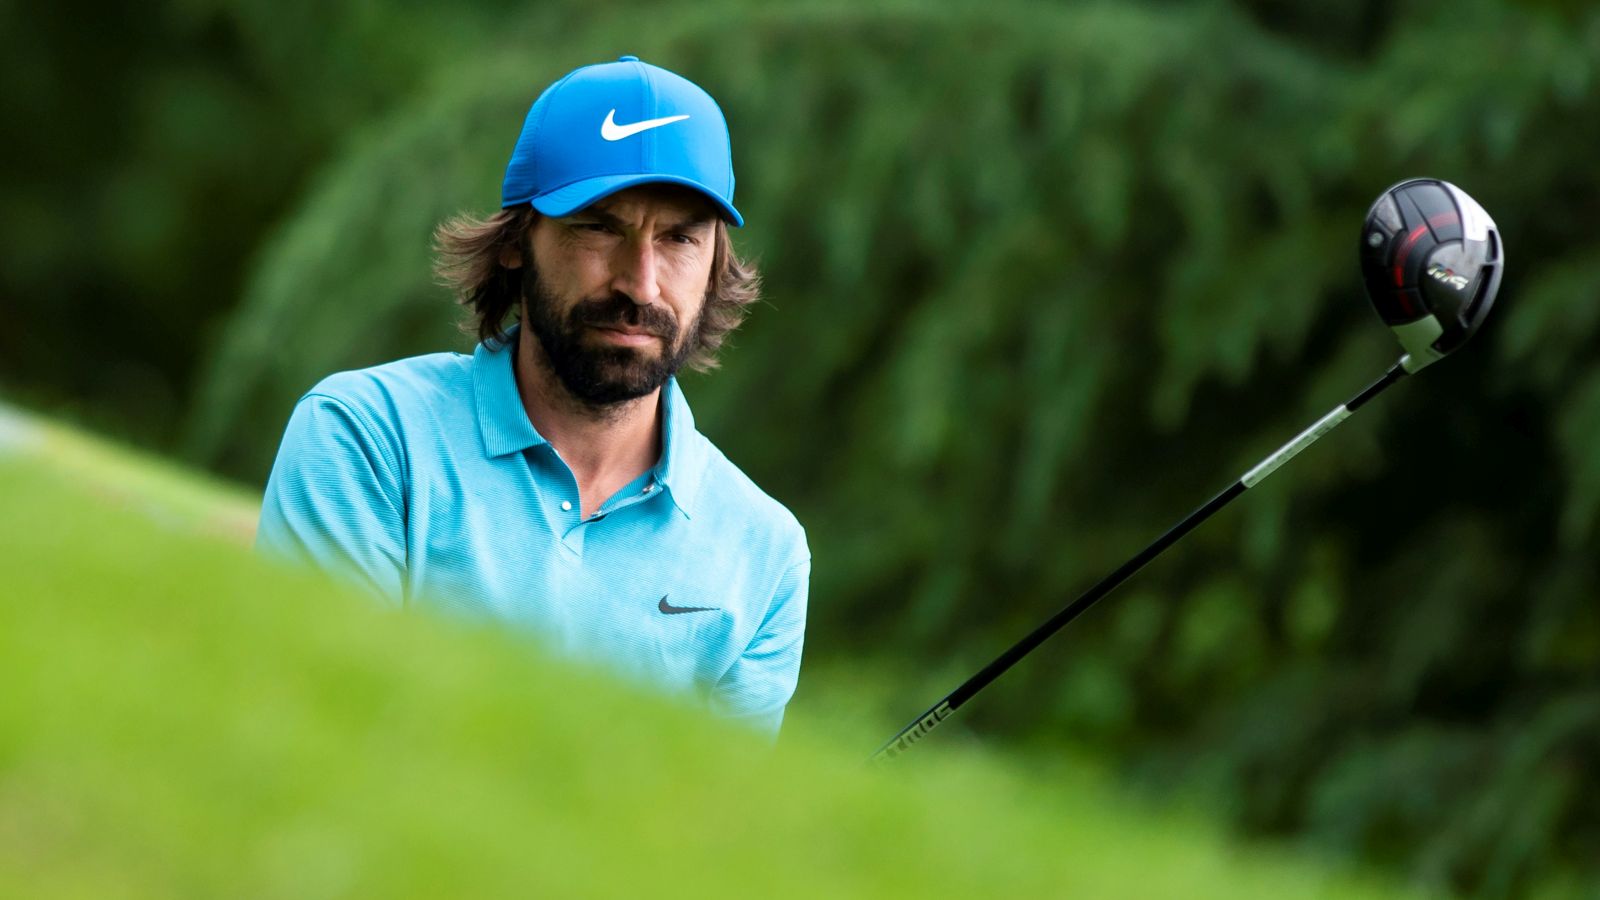 Italiens vielleicht kreativster Mittelfeldspieler aller Zeiten spielt heute ebenfalls gerne Golf: Andrea Pirlo. © Giorgio Perottino/Getty Images